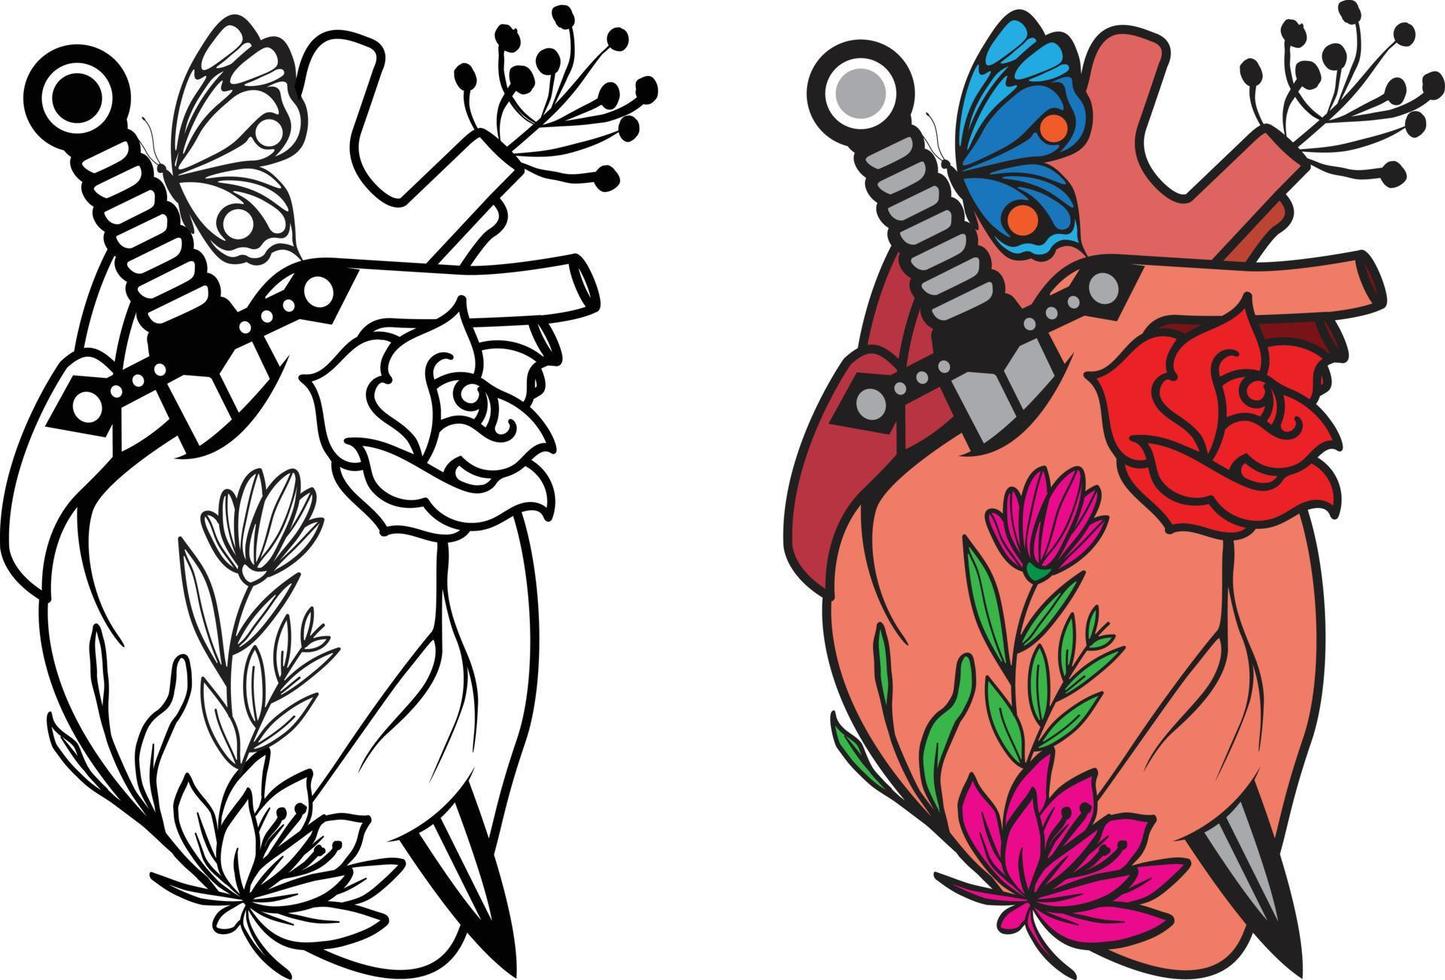 o coração humano e as rosas são perfurados com um punhal e uma borboleta em fundo branco. ilustração vetorial vetor